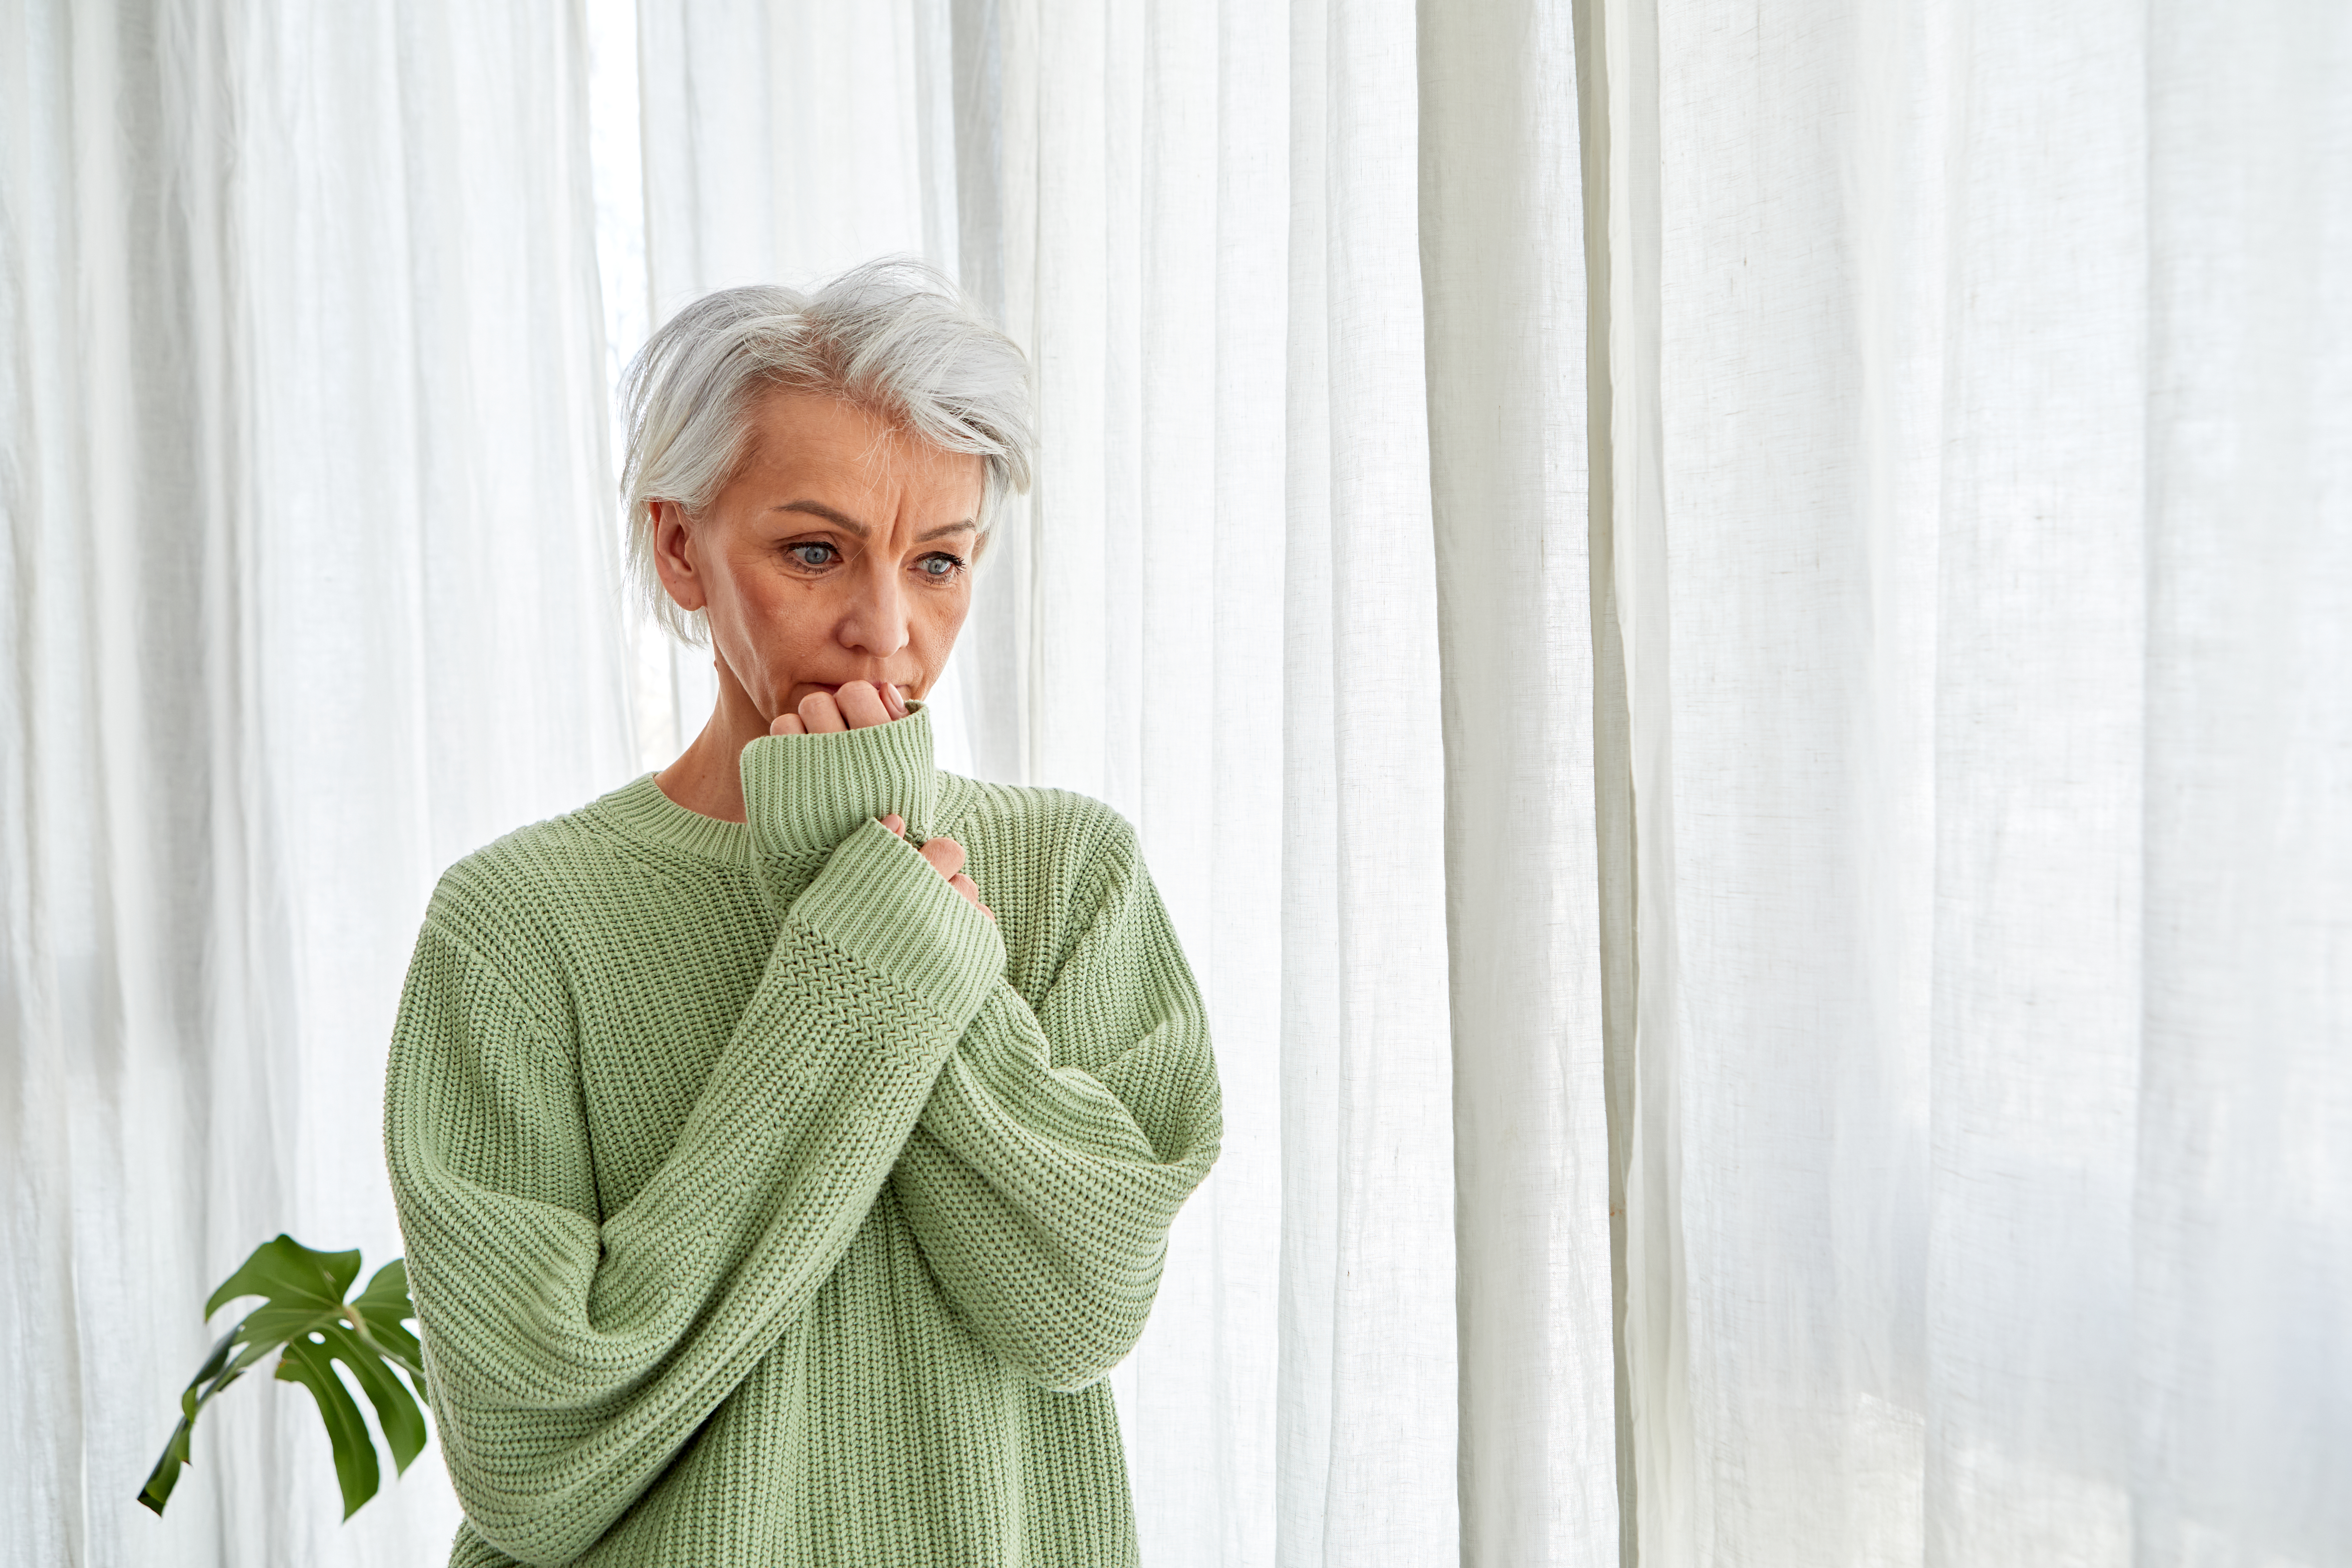 Frau mit grauem Haar kaut nervös an ihren Nägeln am Fenster | Quelle: Getty Images